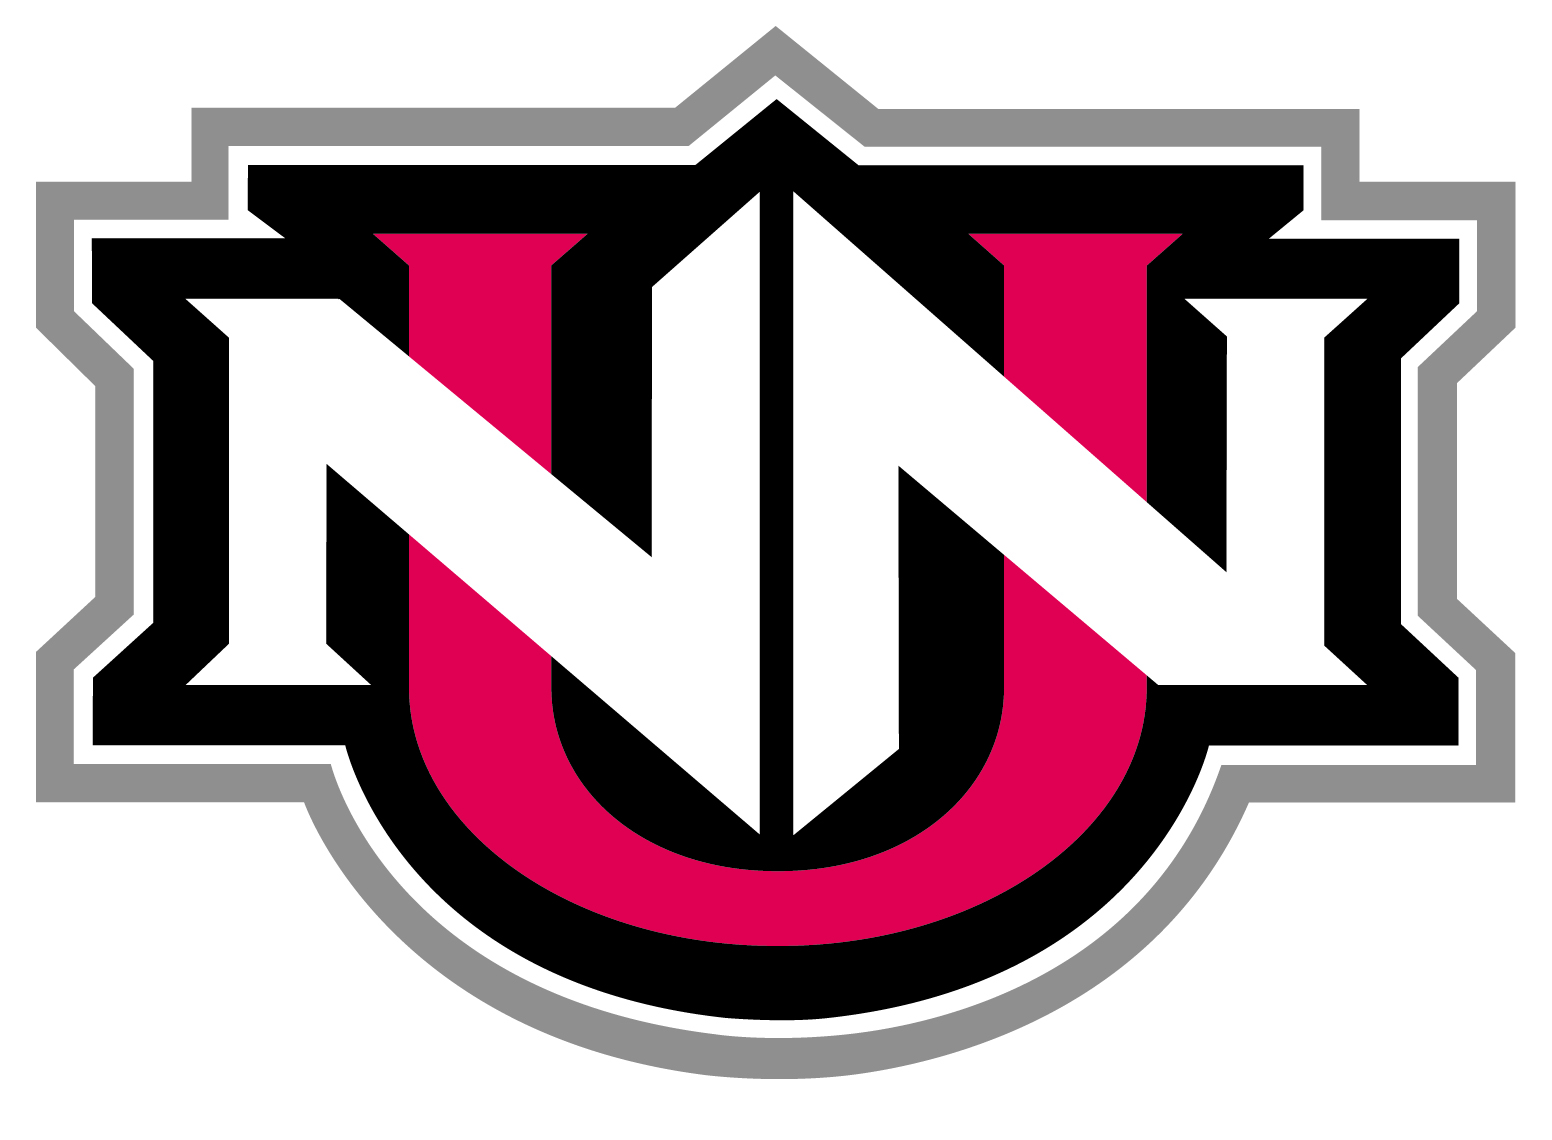 Northwest Nazarene University changes its mascot